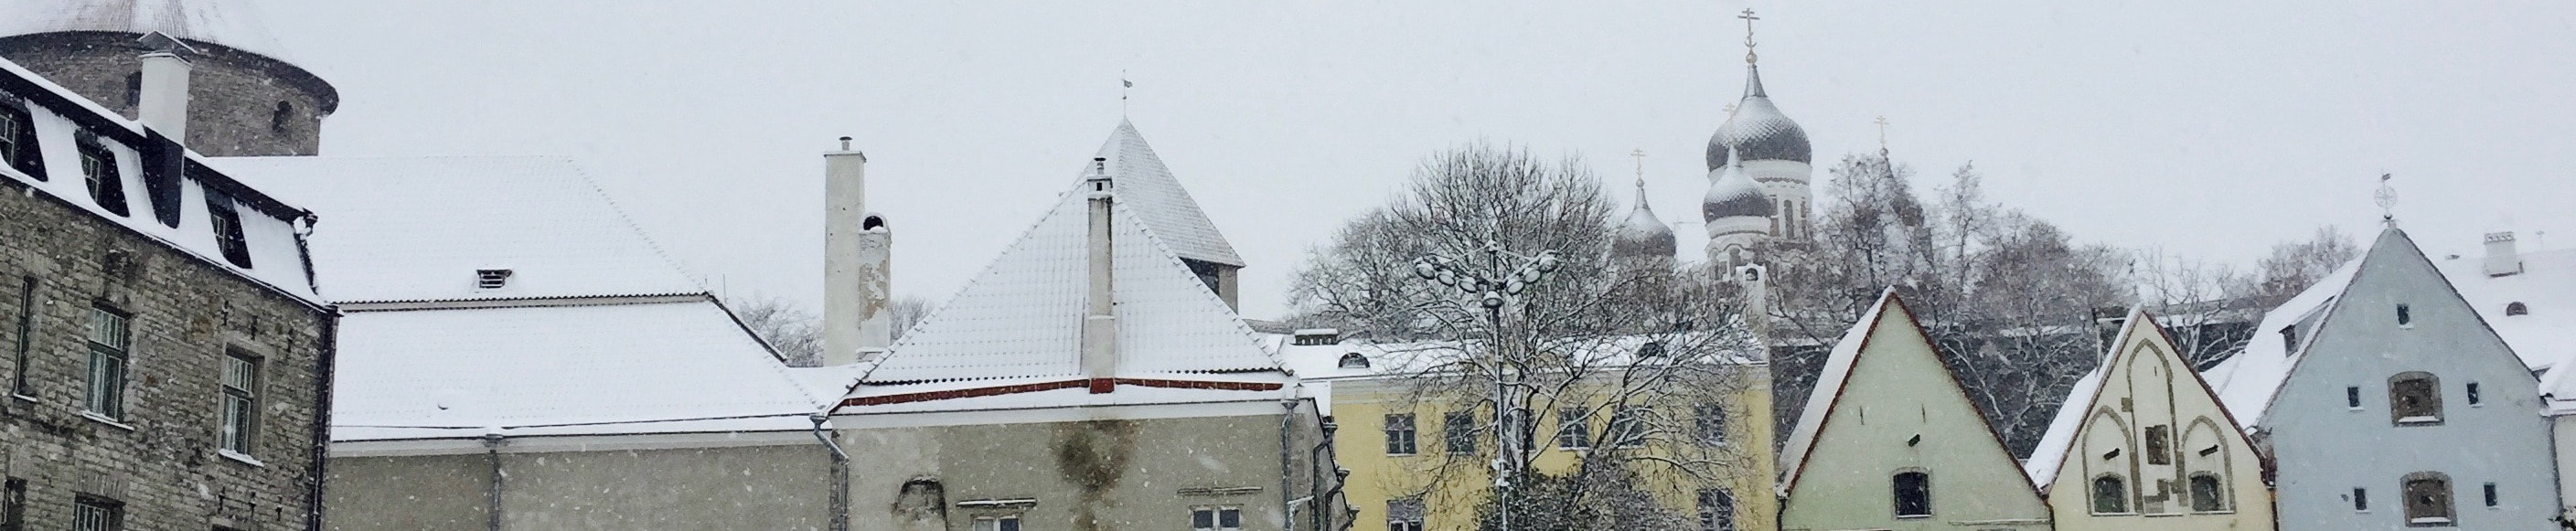 Tallinn, Estonia, rooftops in the snow